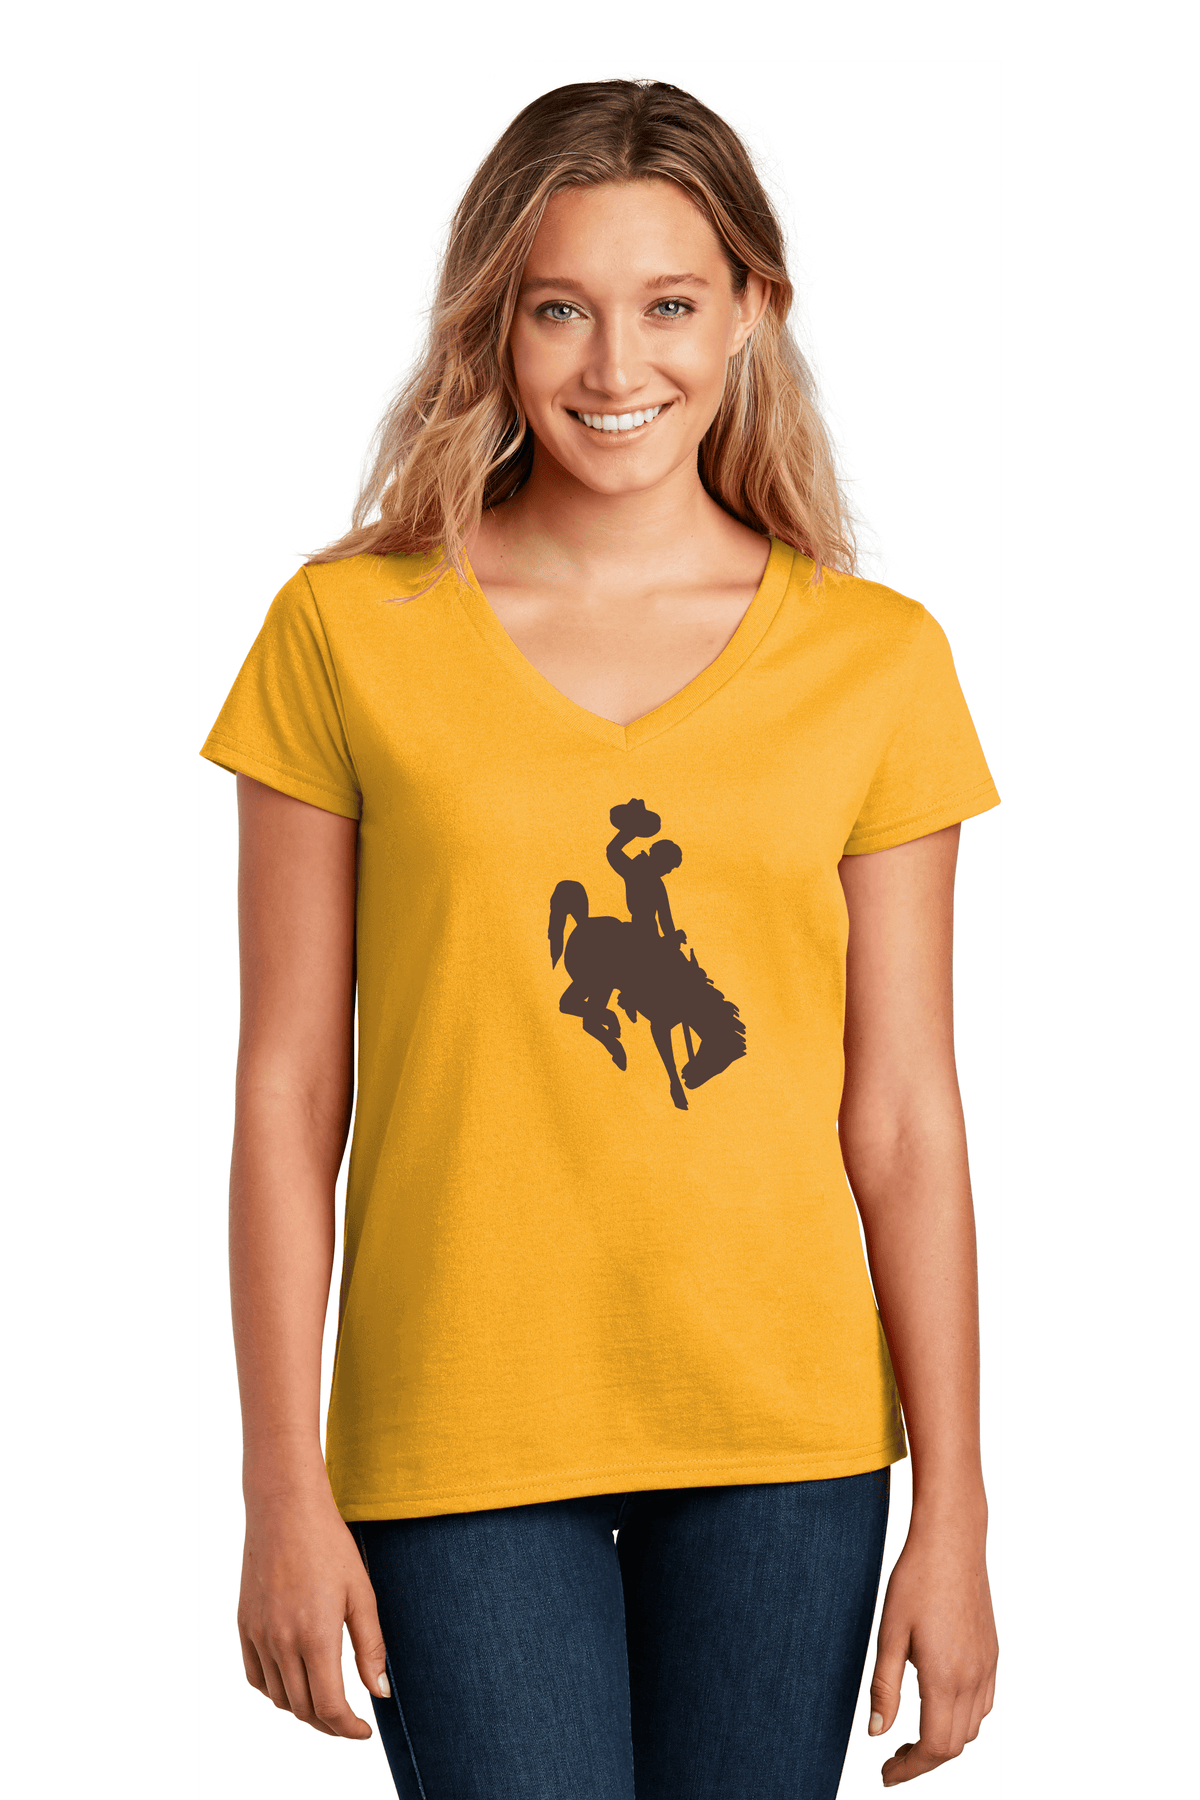 Ladies University Of Wyoming Steamboat Shirt